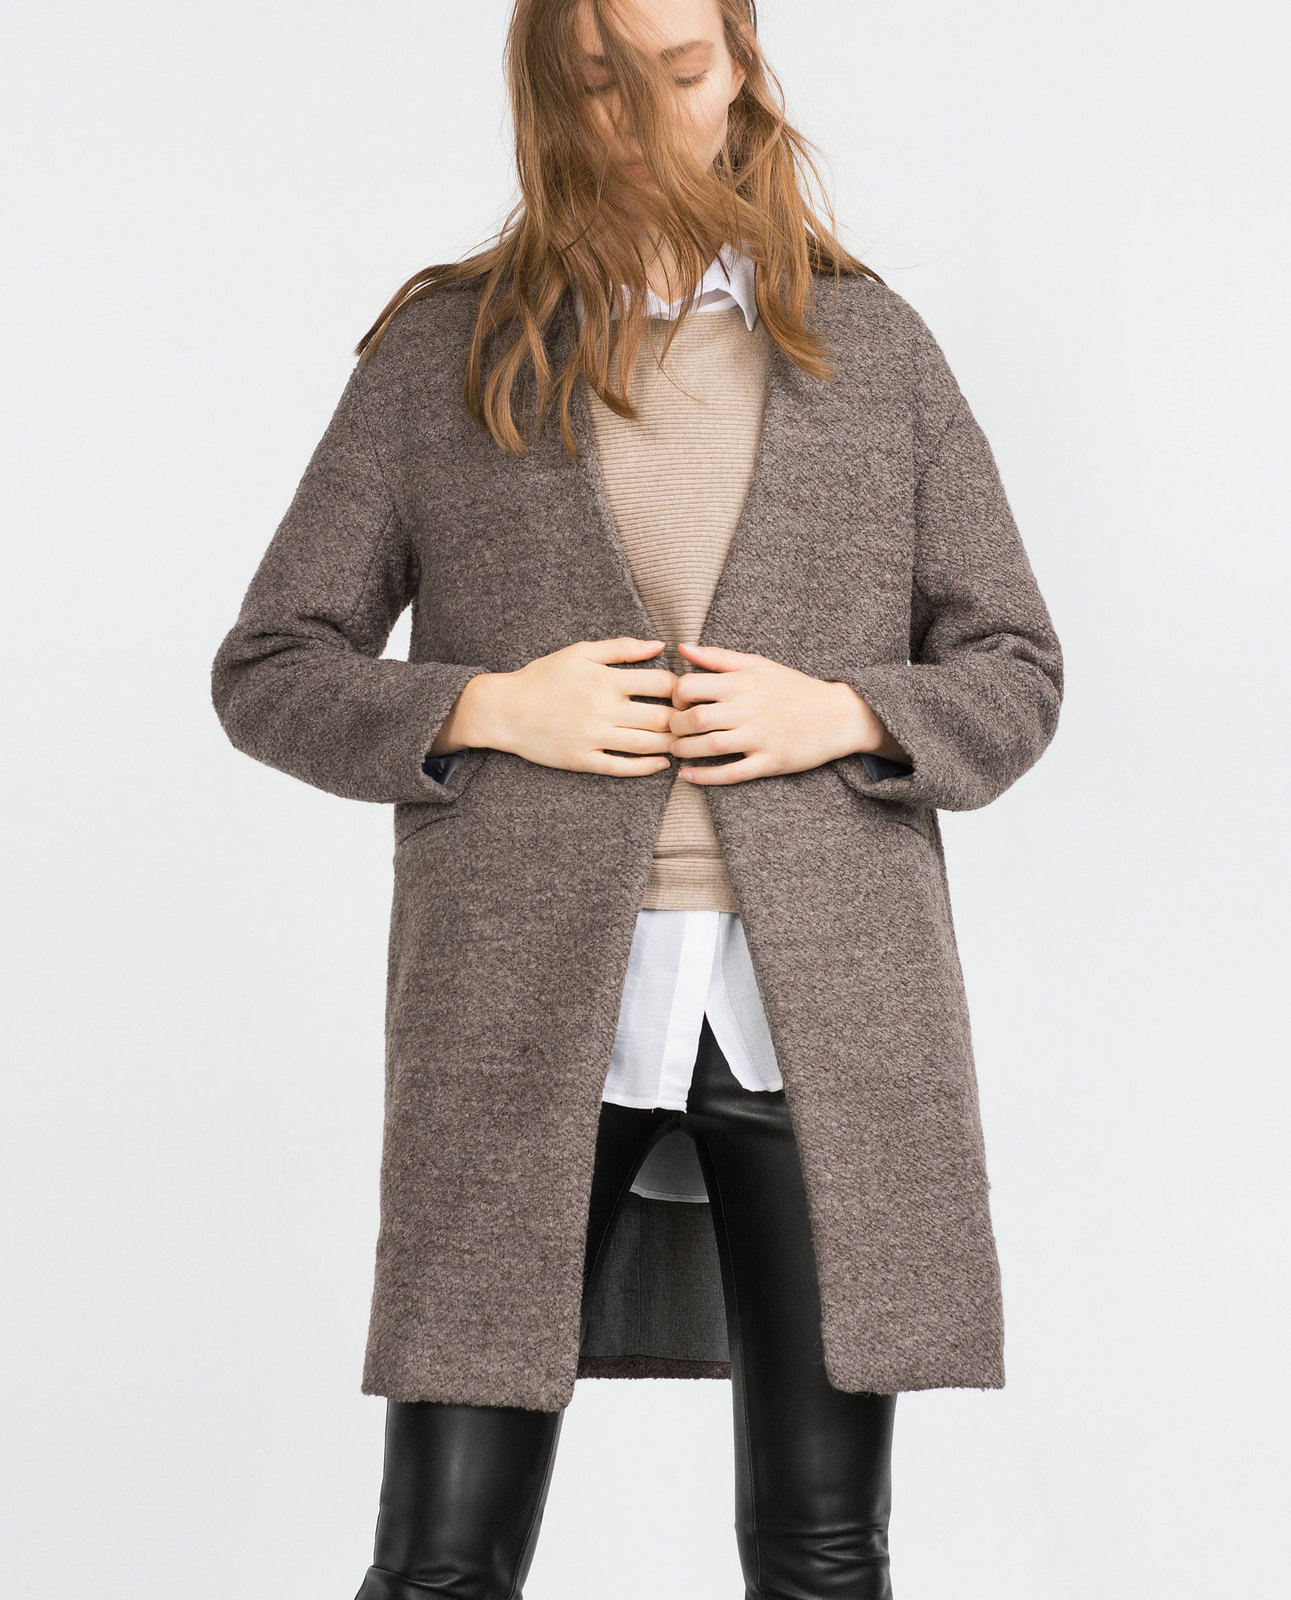 Zara női buklé gyapjú kabát 2015 fotója